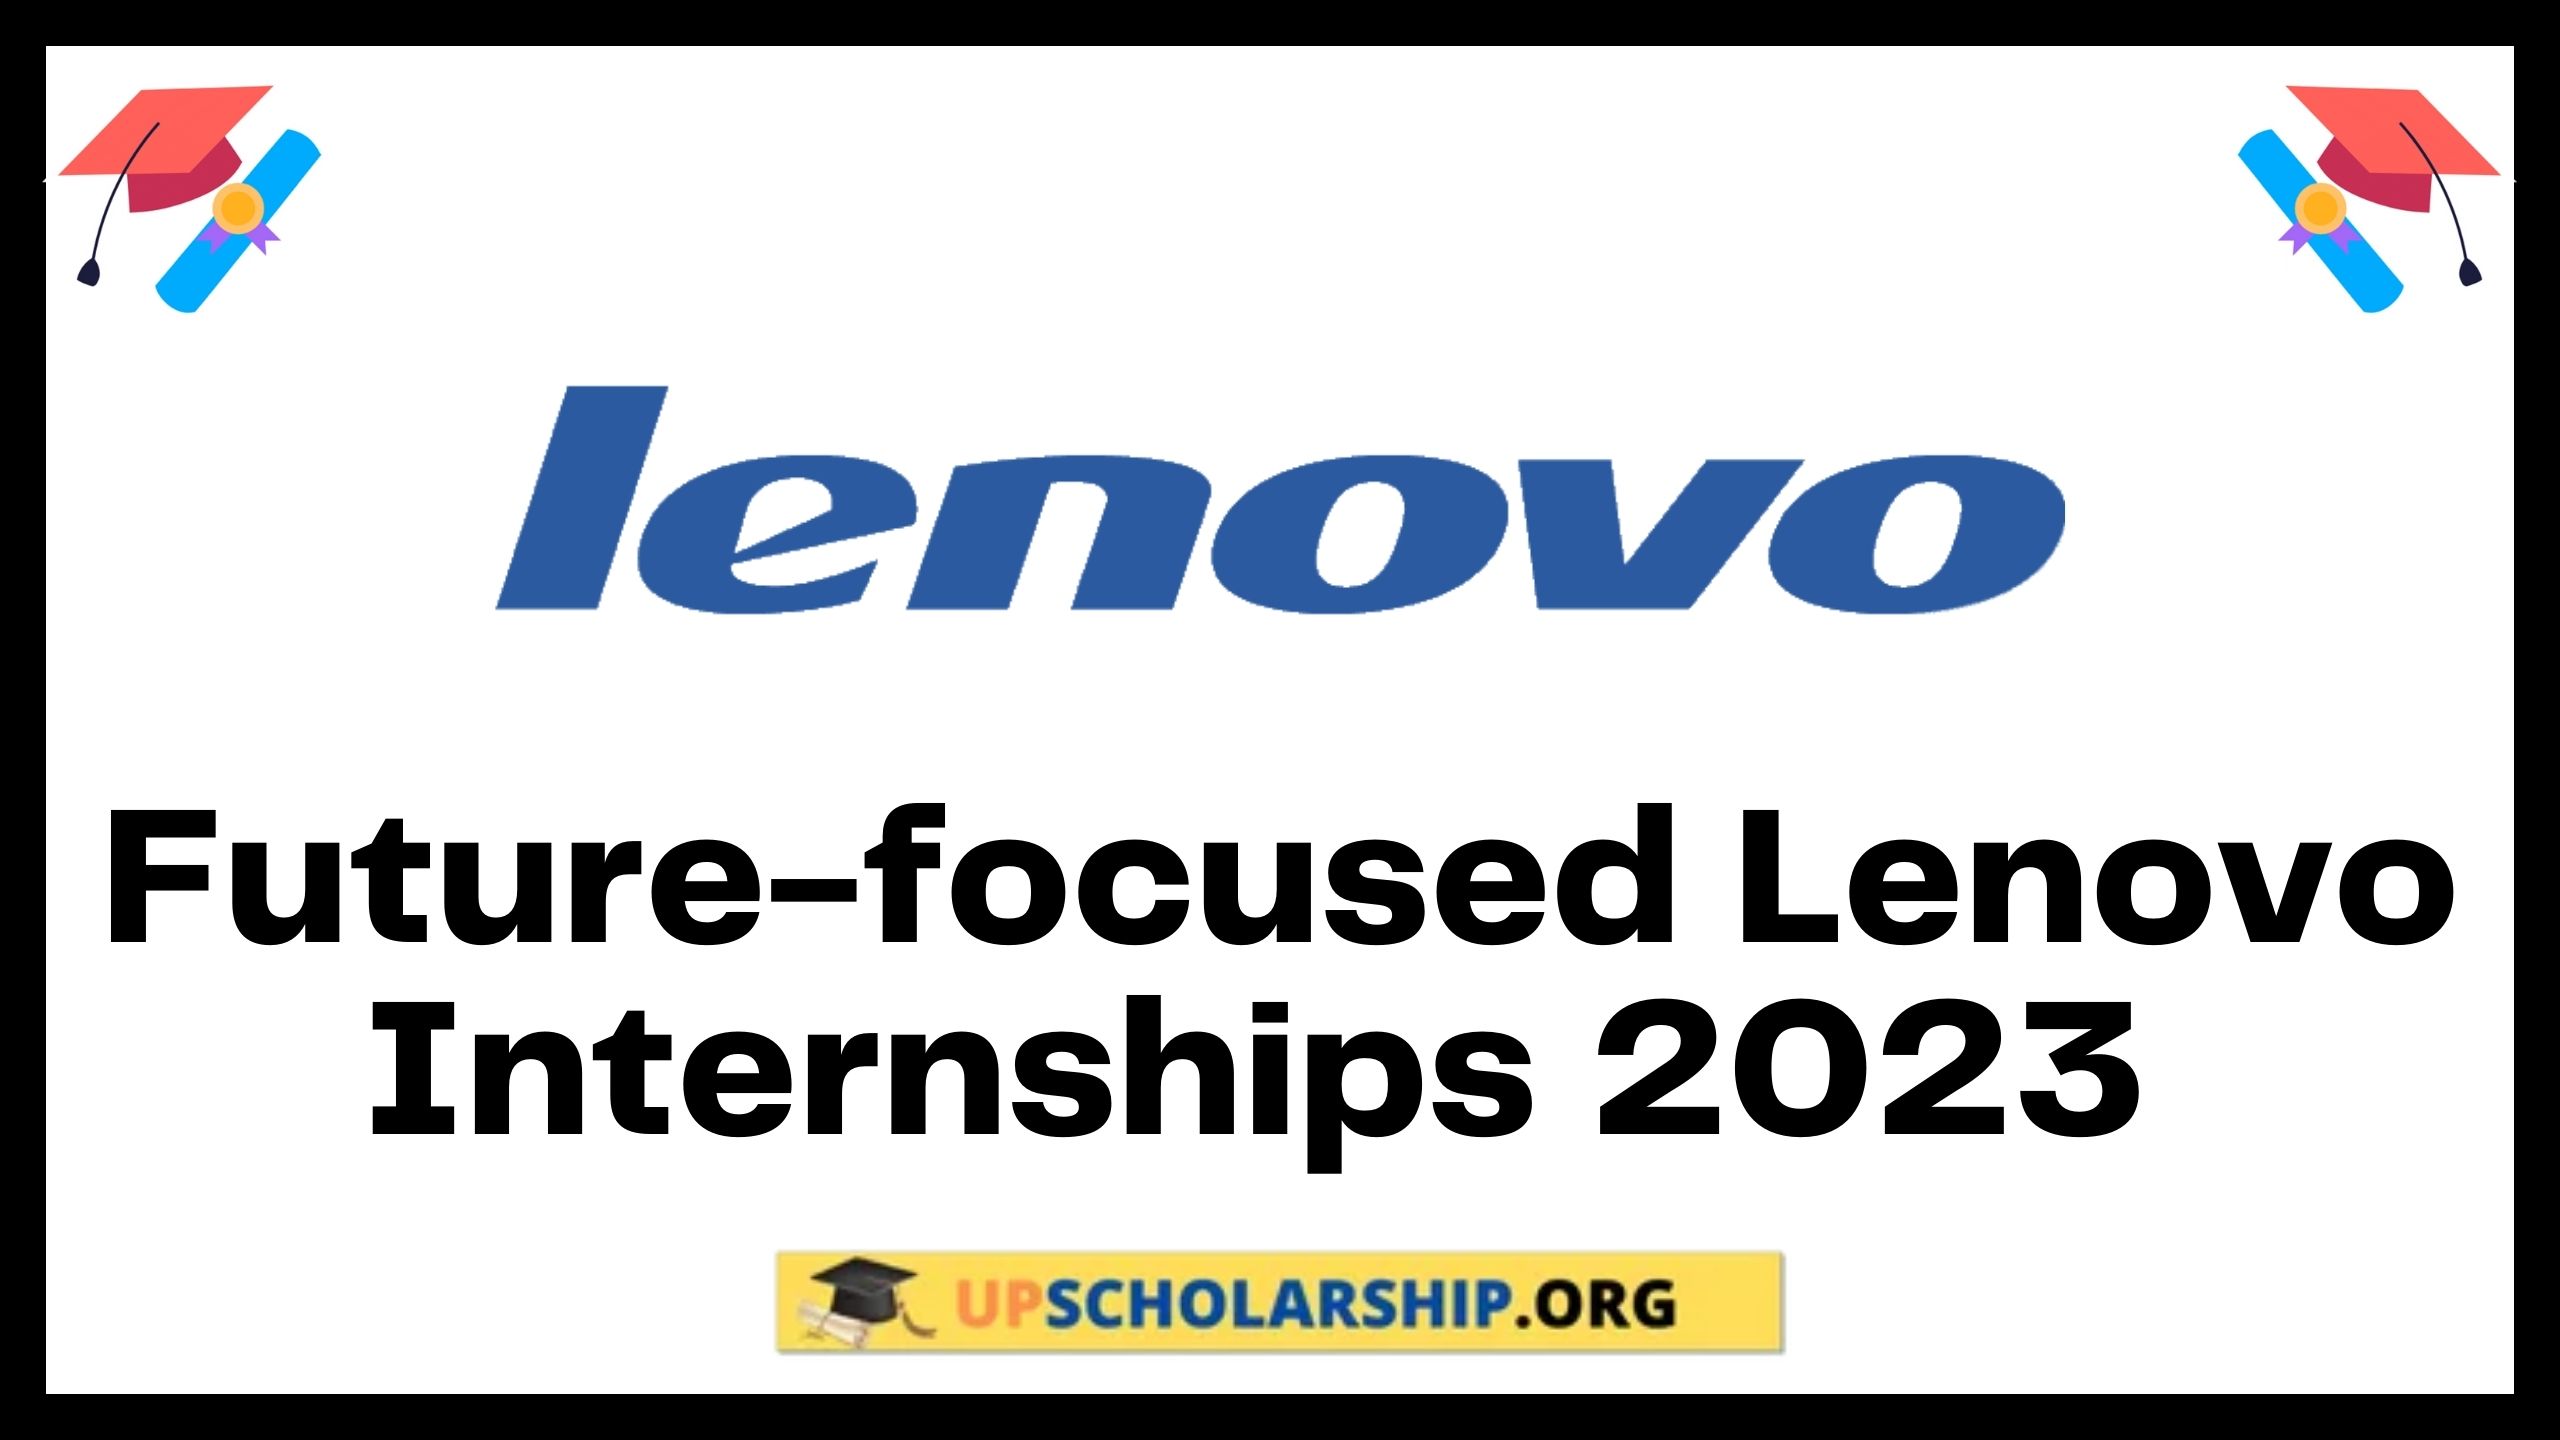 Future-focused Lenovo Internship 2023